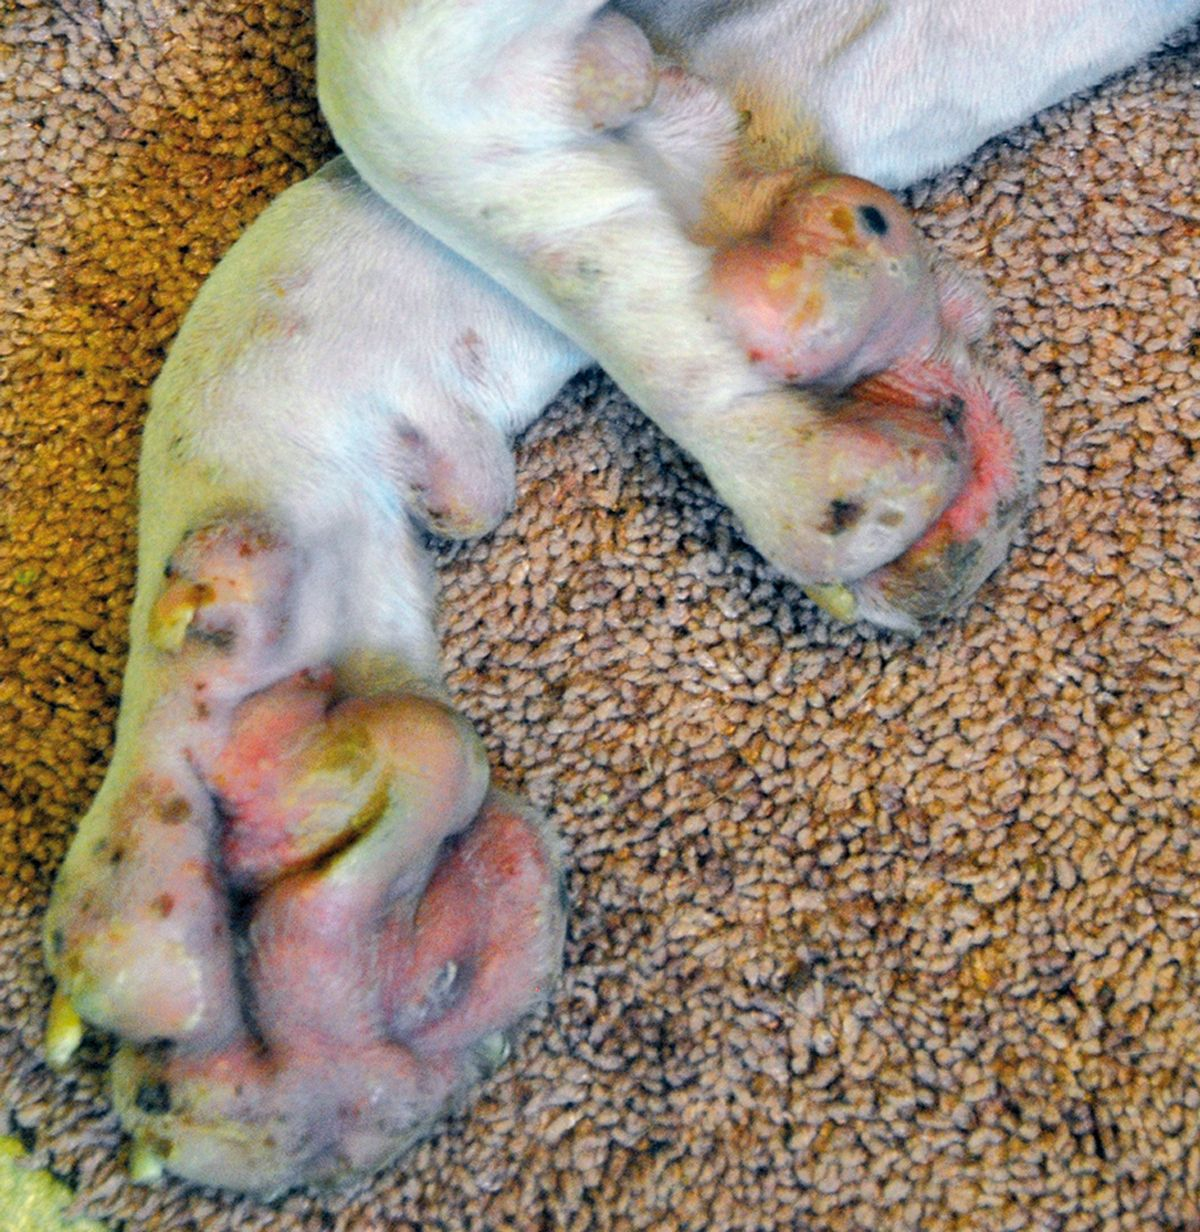 Figura 3. Perro con pénfigo foliáceo. Como las pústulas son frágiles y se rompen, en su lugar se pueden observar costras (restos de pústulas secas). © Rosanna Marsella